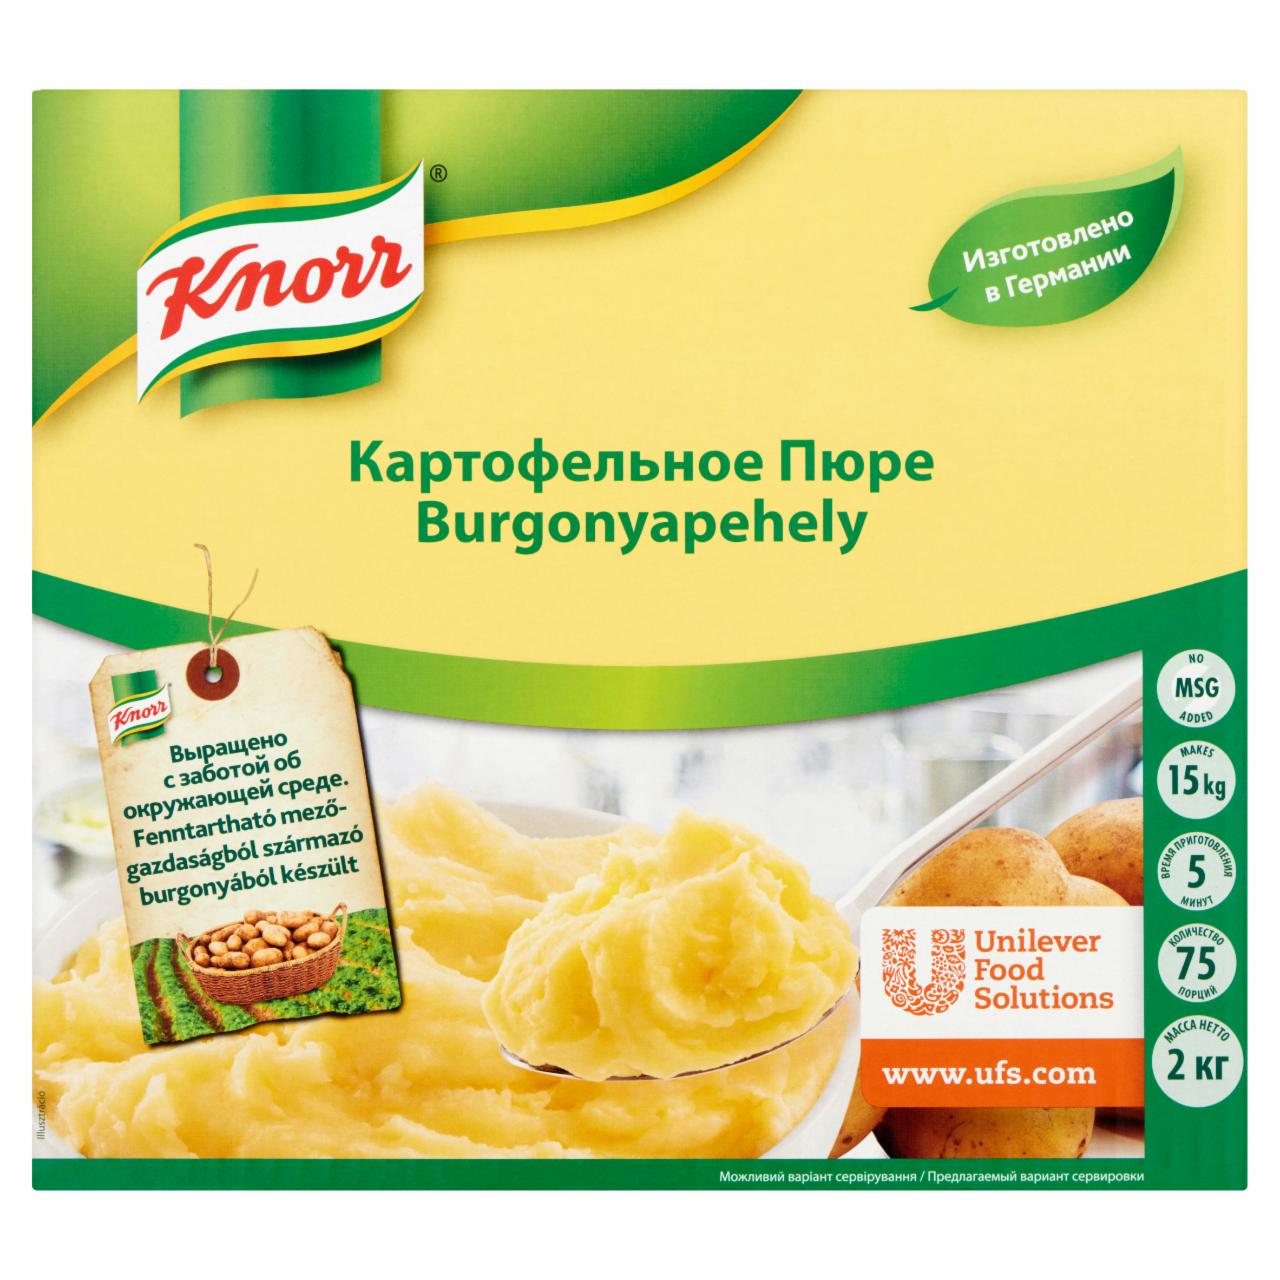 Képek - Knorr burgonyapehely 2 kg